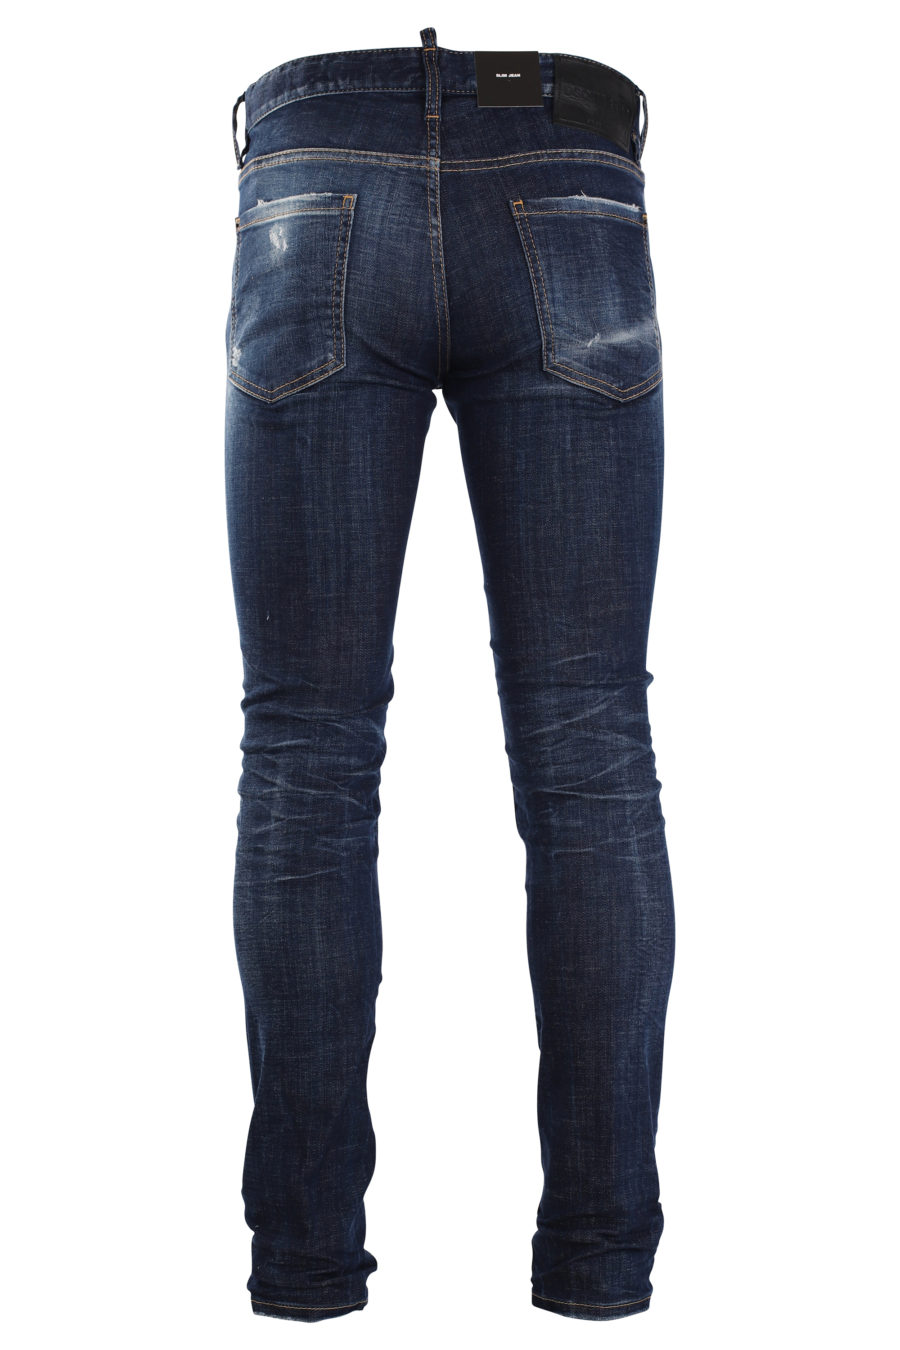 Pantalón vaquero "slim jean" azul con efecto desgastado - IMG 9990